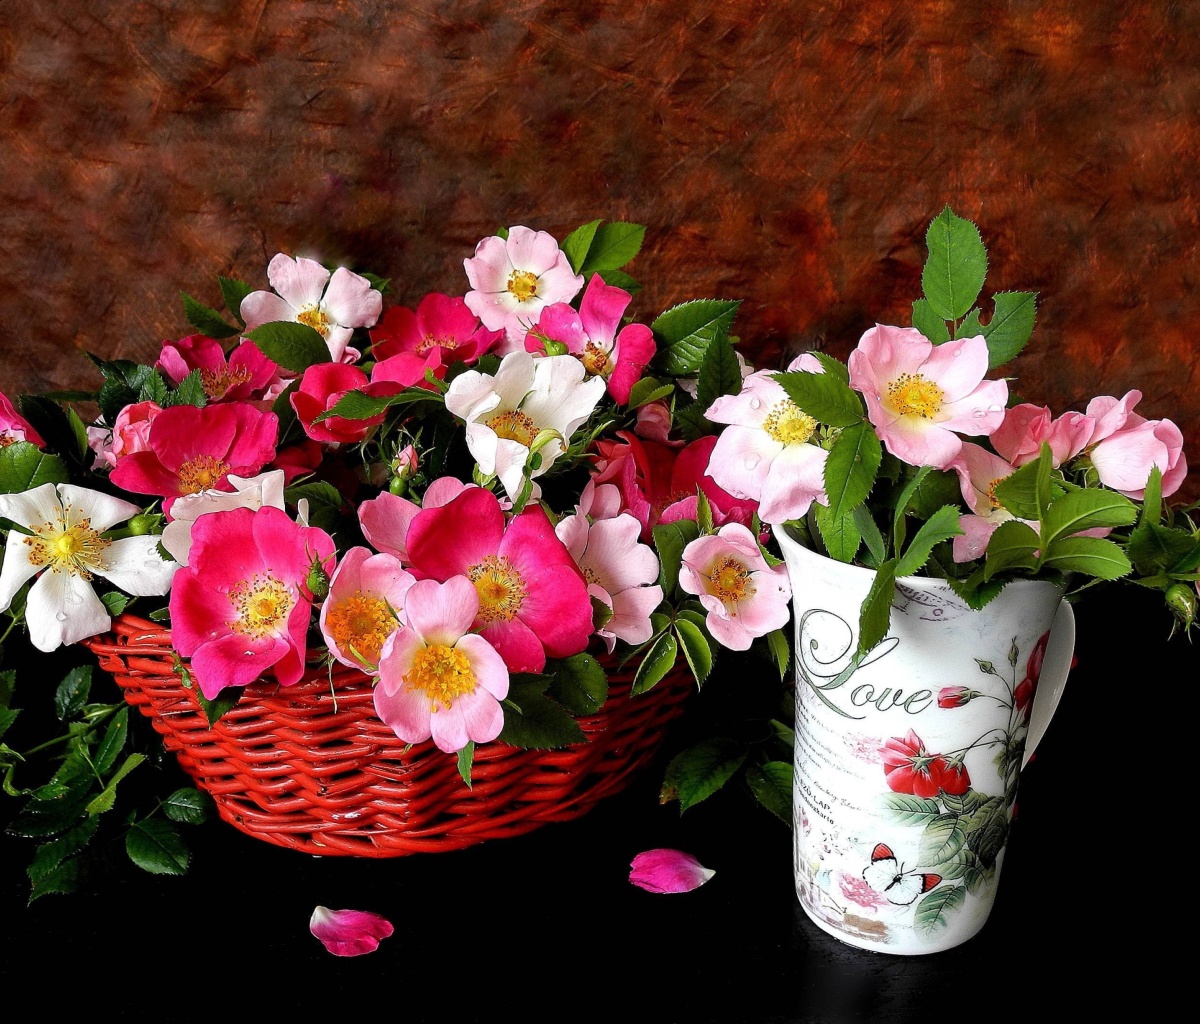 Sweetheart flowers wallpaper 1200x1024